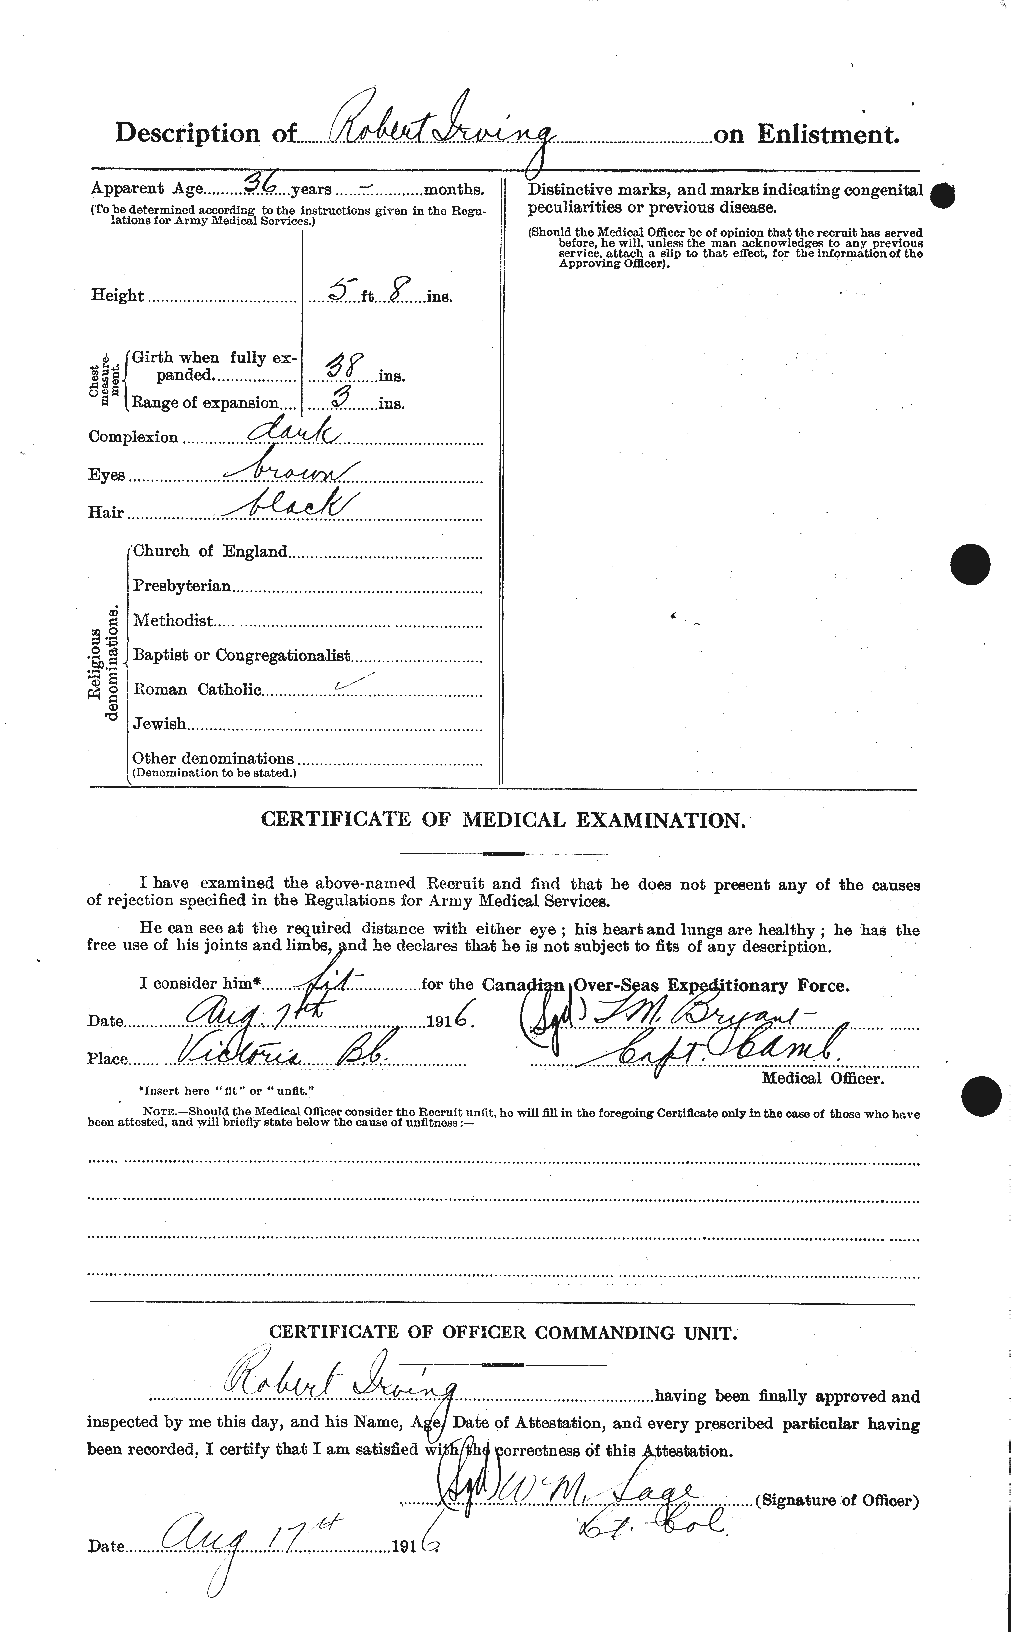 Dossiers du Personnel de la Première Guerre mondiale - CEC 412709b